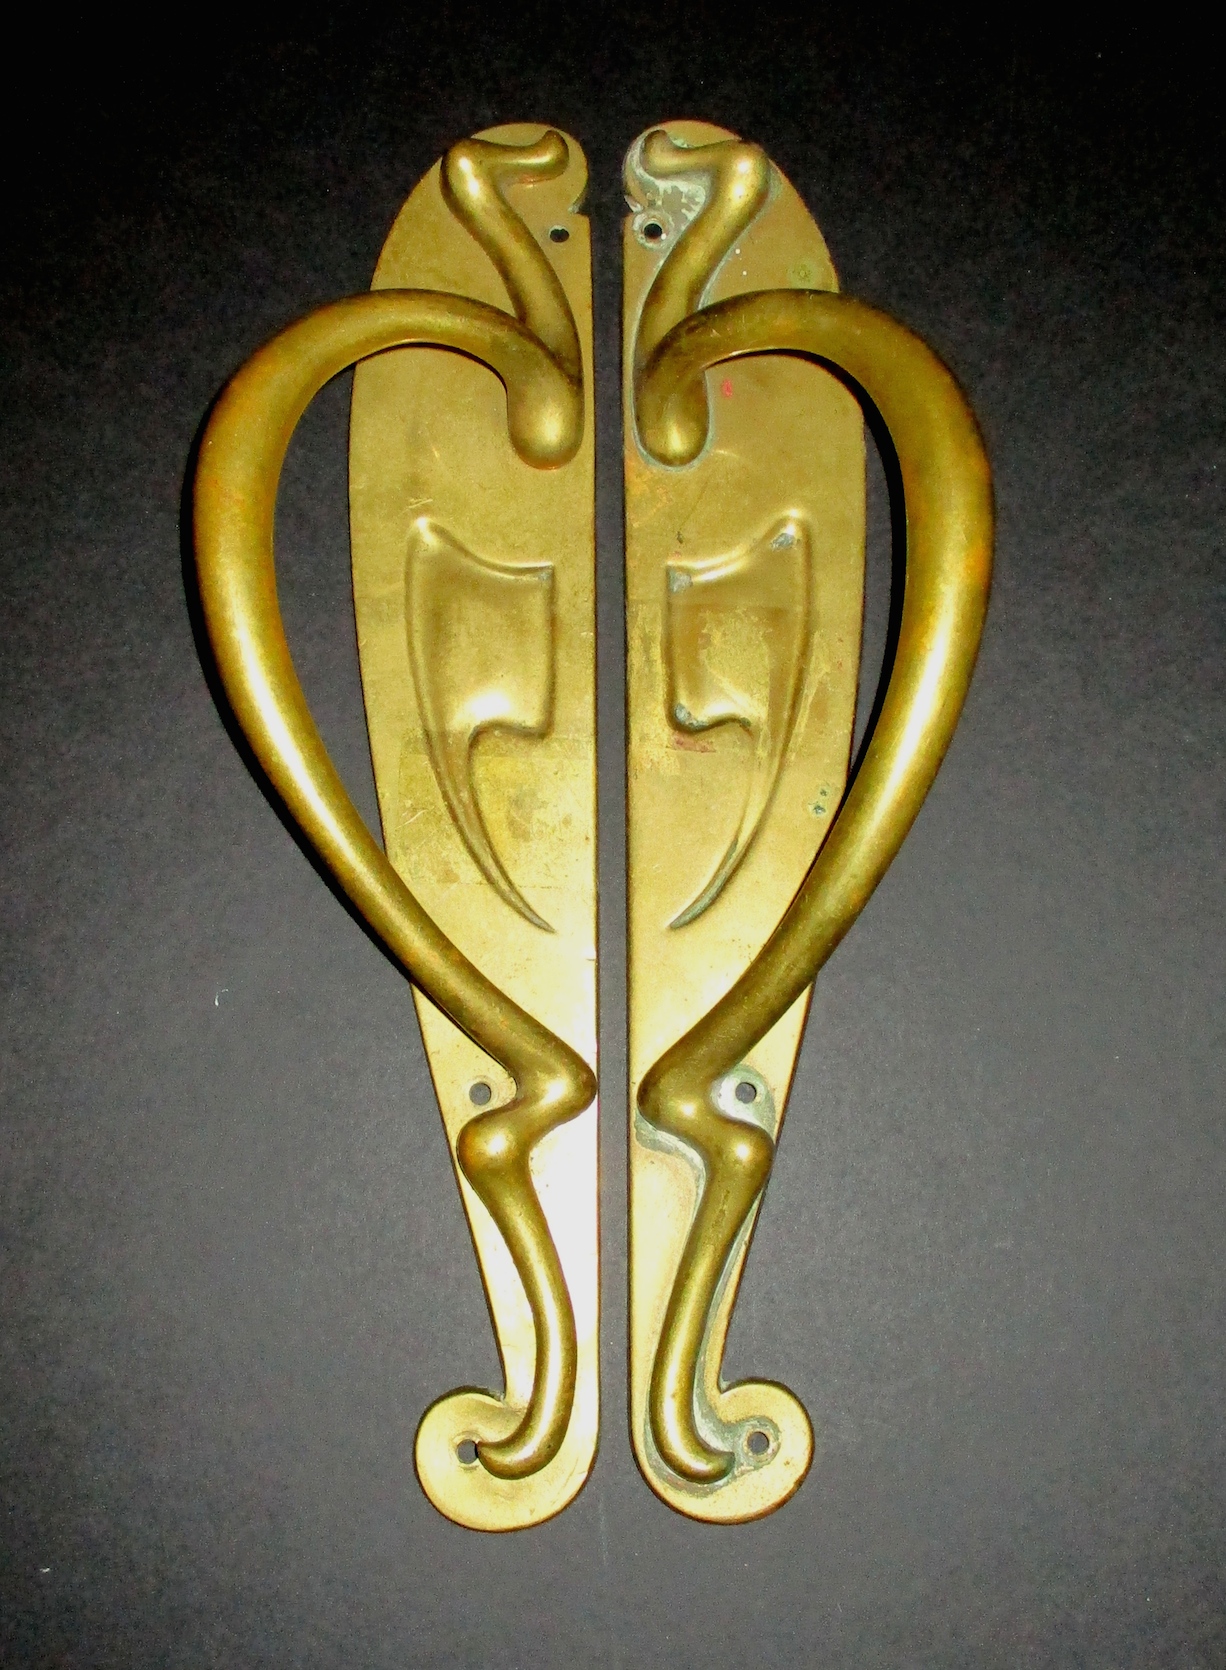 Pair of Brass Art Nouveau Handles (13" L x 3 1/2" W)